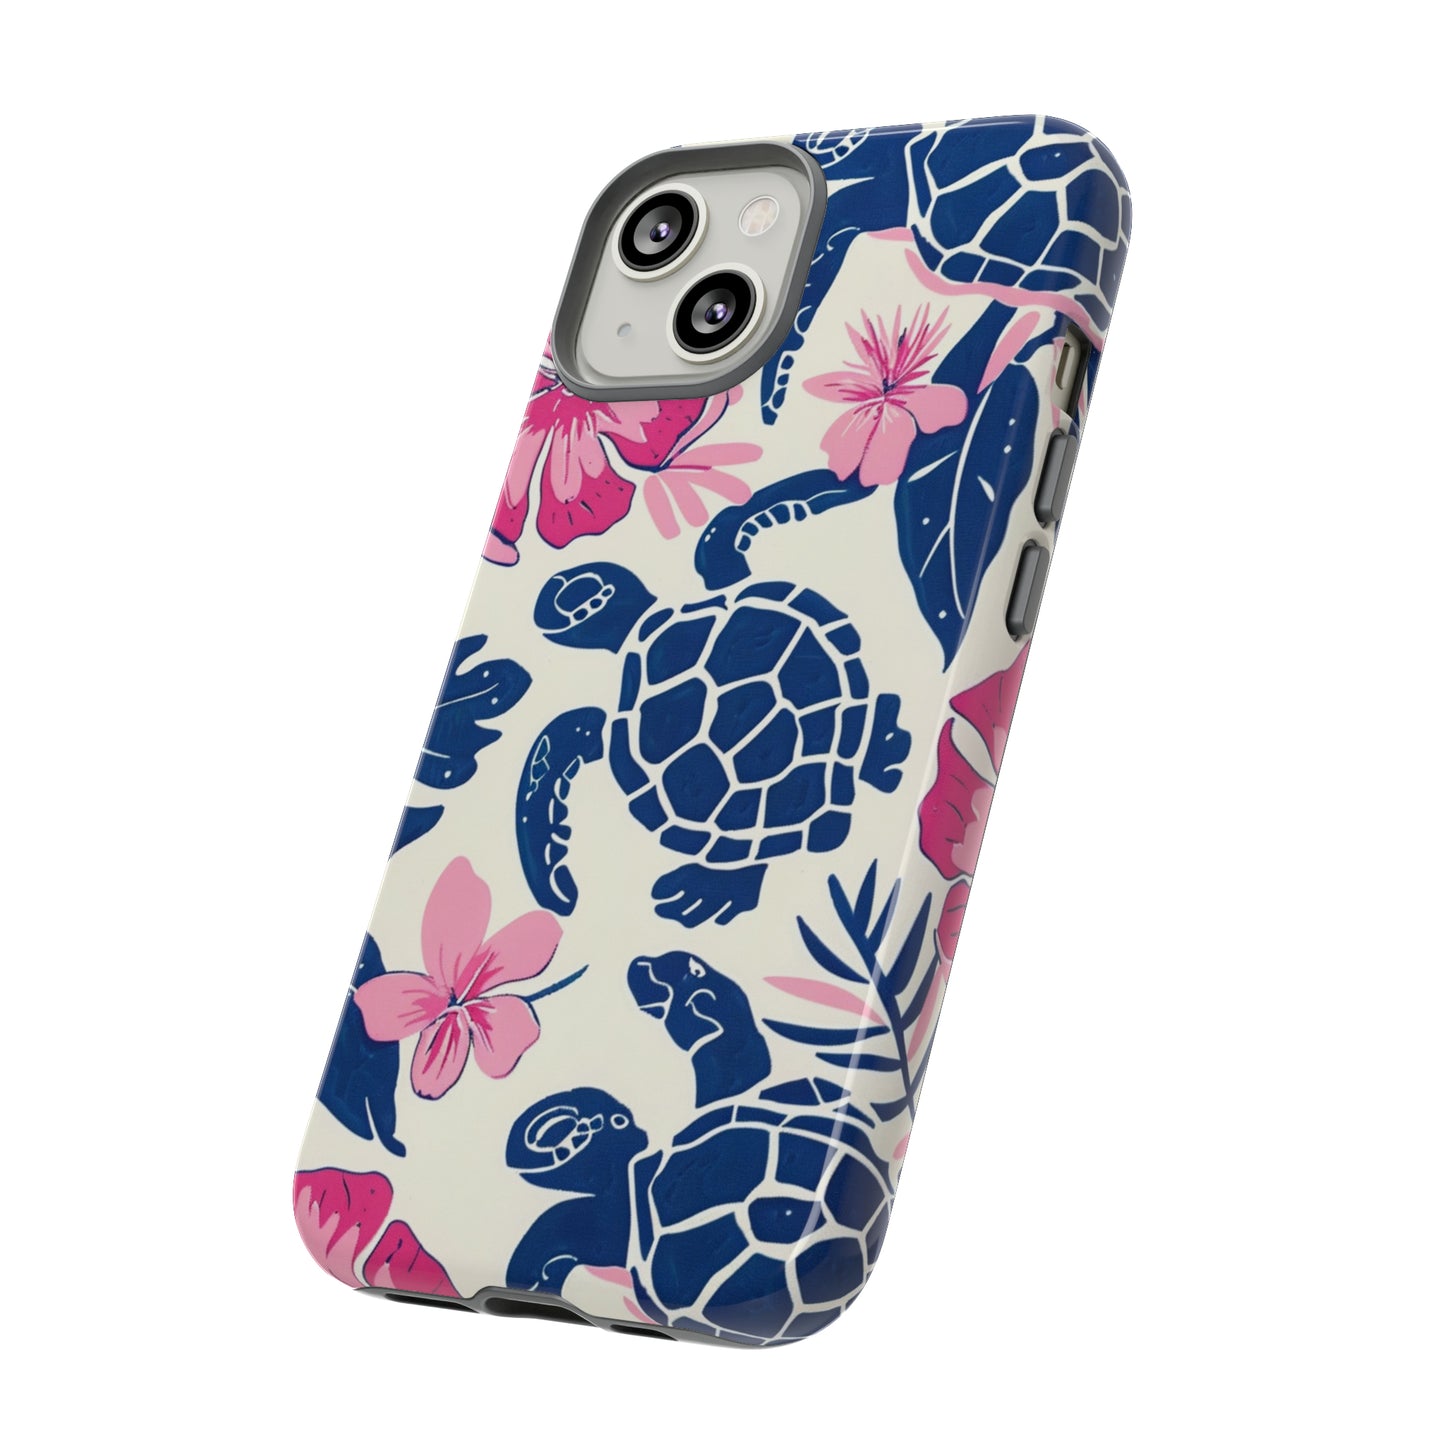 Undersea Floral Blue Sea Turtle Phone Case